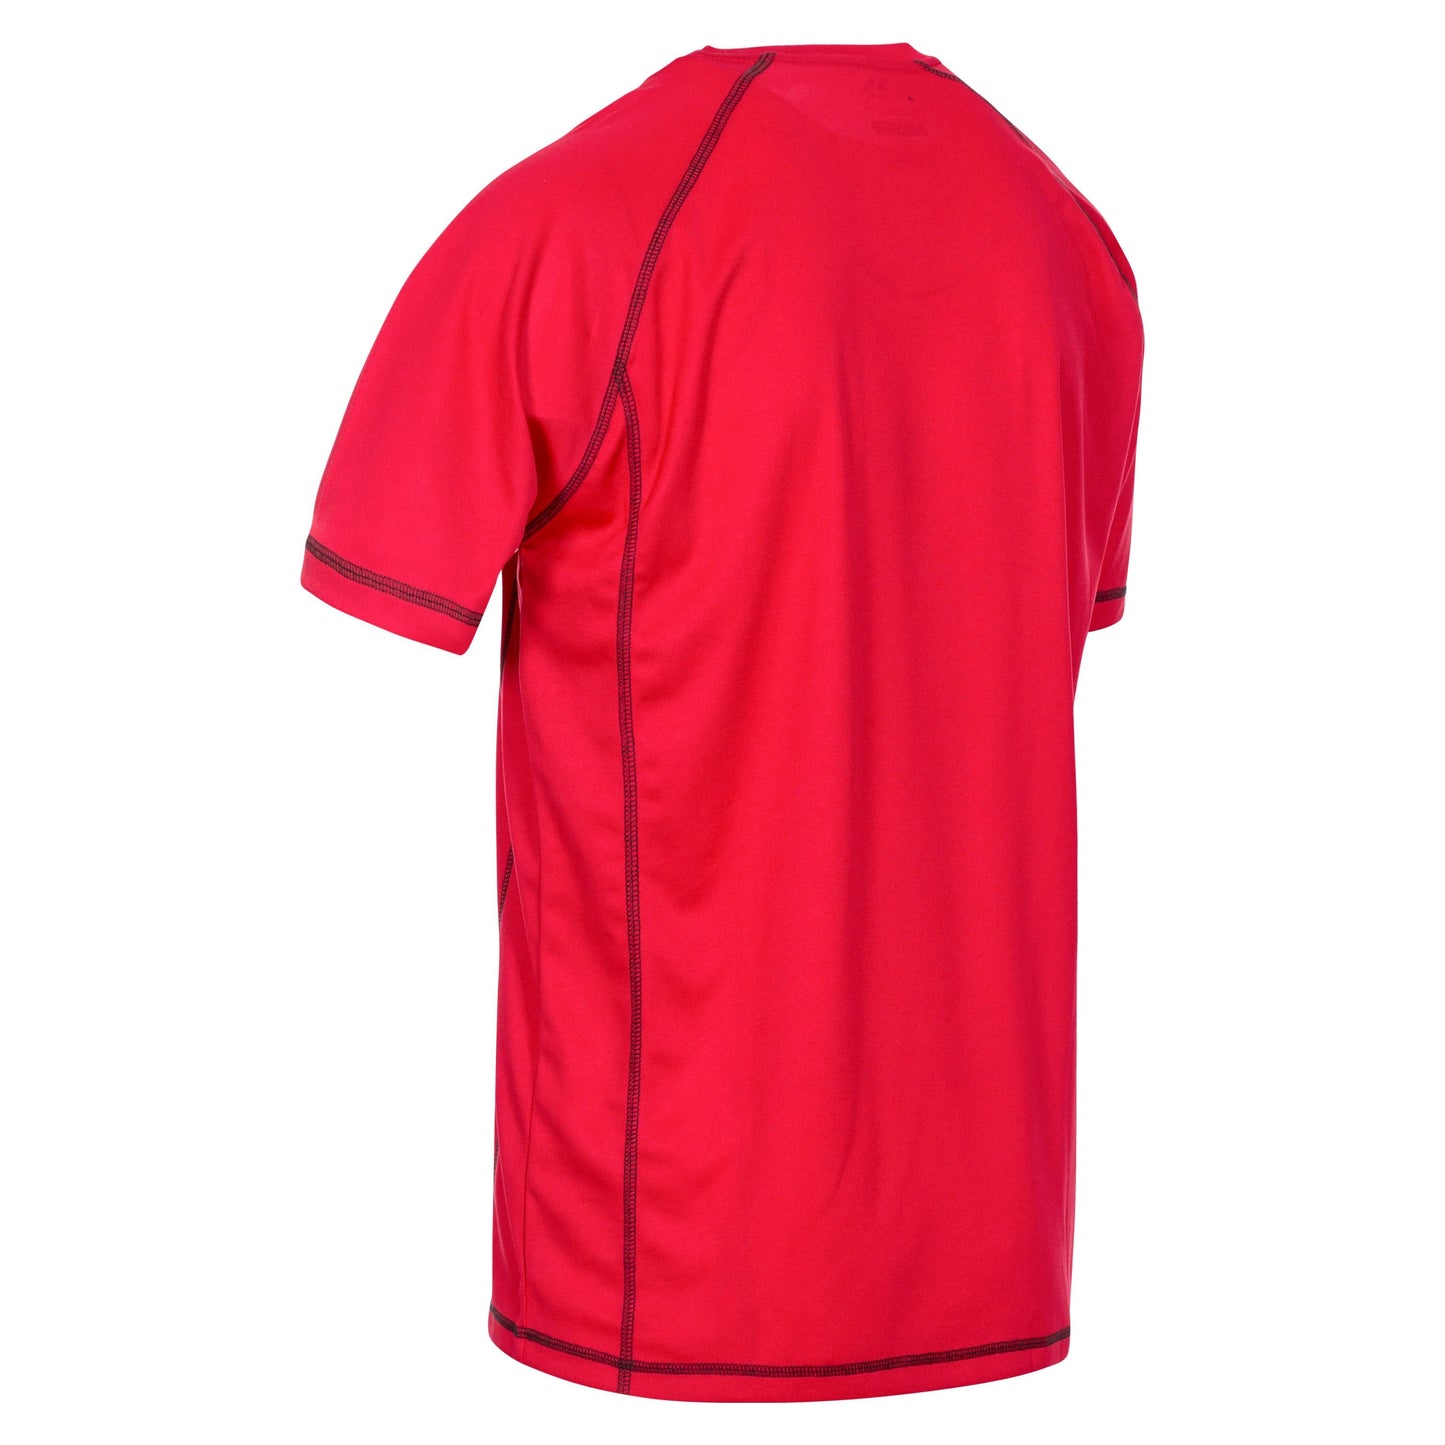 Albert Men's Quick Dry Active T-Shirt - Red